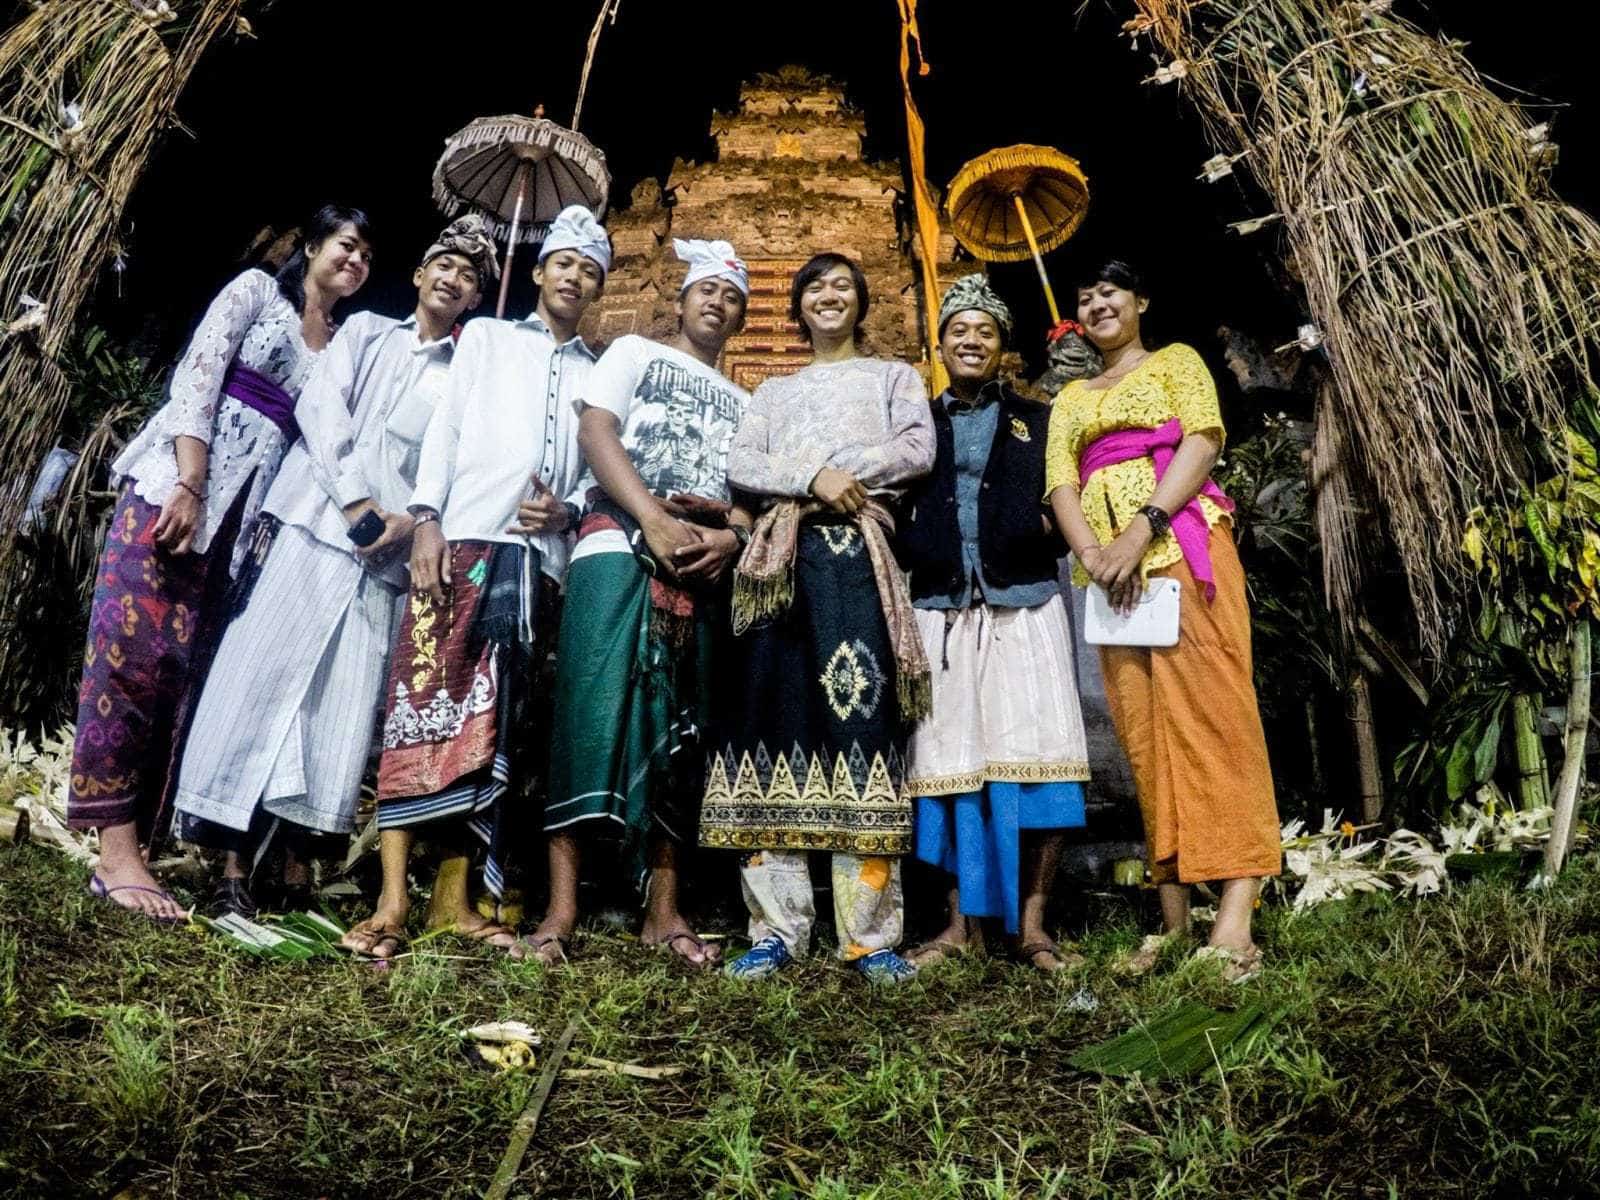 Được các bạn thết đãi màn xem điệu múa Bali trứ danh